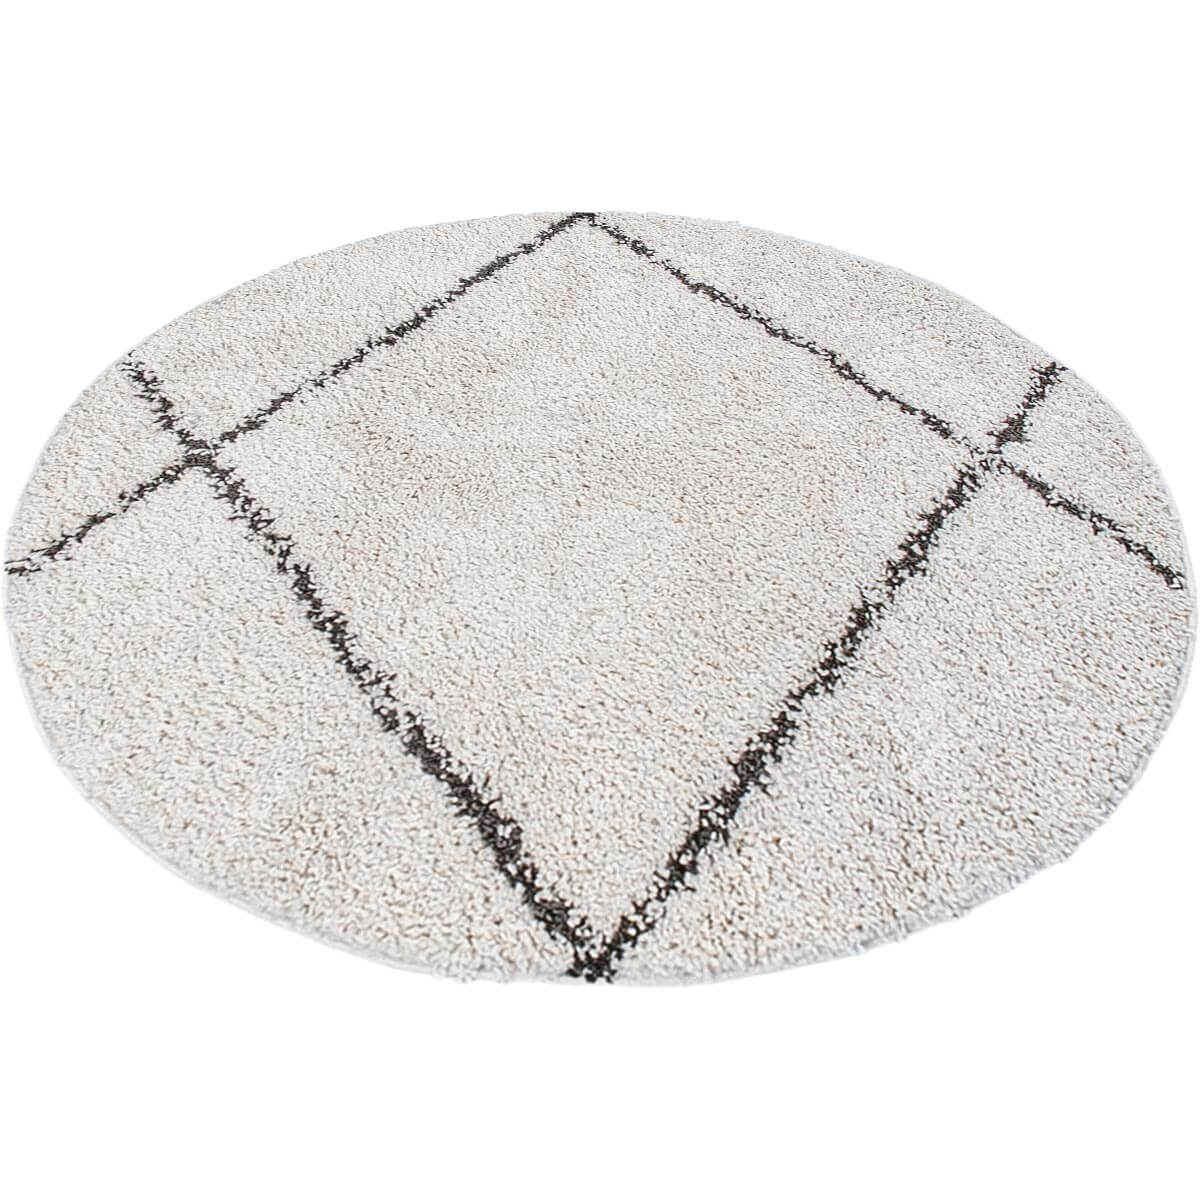 שטיח שאגי מרקש 05 קרם/שחור עגול | השטיח האדום